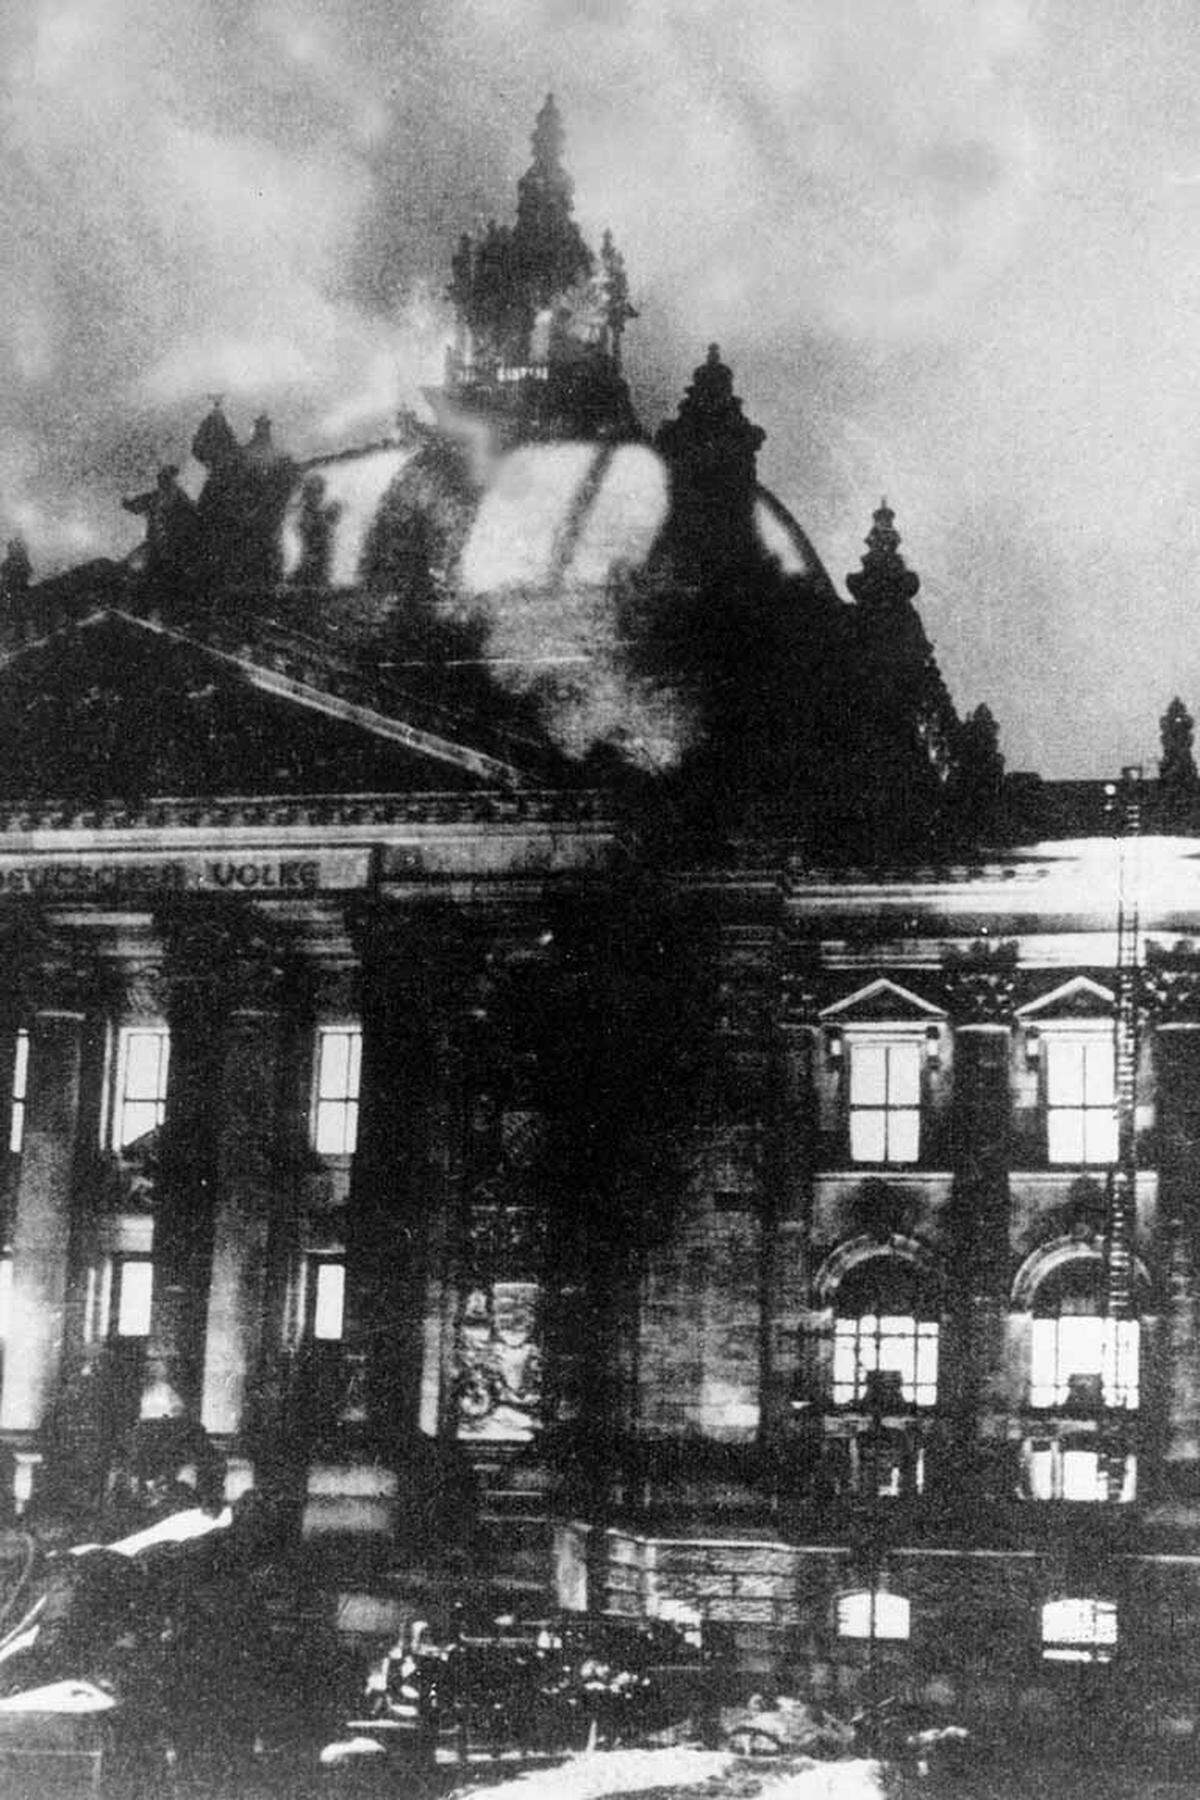 Am Abend des 27. Februar 1933 steigt Rauch in den Berliner Himmel auf. Kurz nach 21 Uhr gehen bei Feuerwehr und Polizei Notrufe ein: Der Reichstag brennt. Zahlreiche Berliner Bürger strömen vor das Gebäude. Sie ahnen zu diesem Zeitpunkt wohl noch nicht, dass das Feuer letztlich die gesamte Republik in Brand setzen wird.